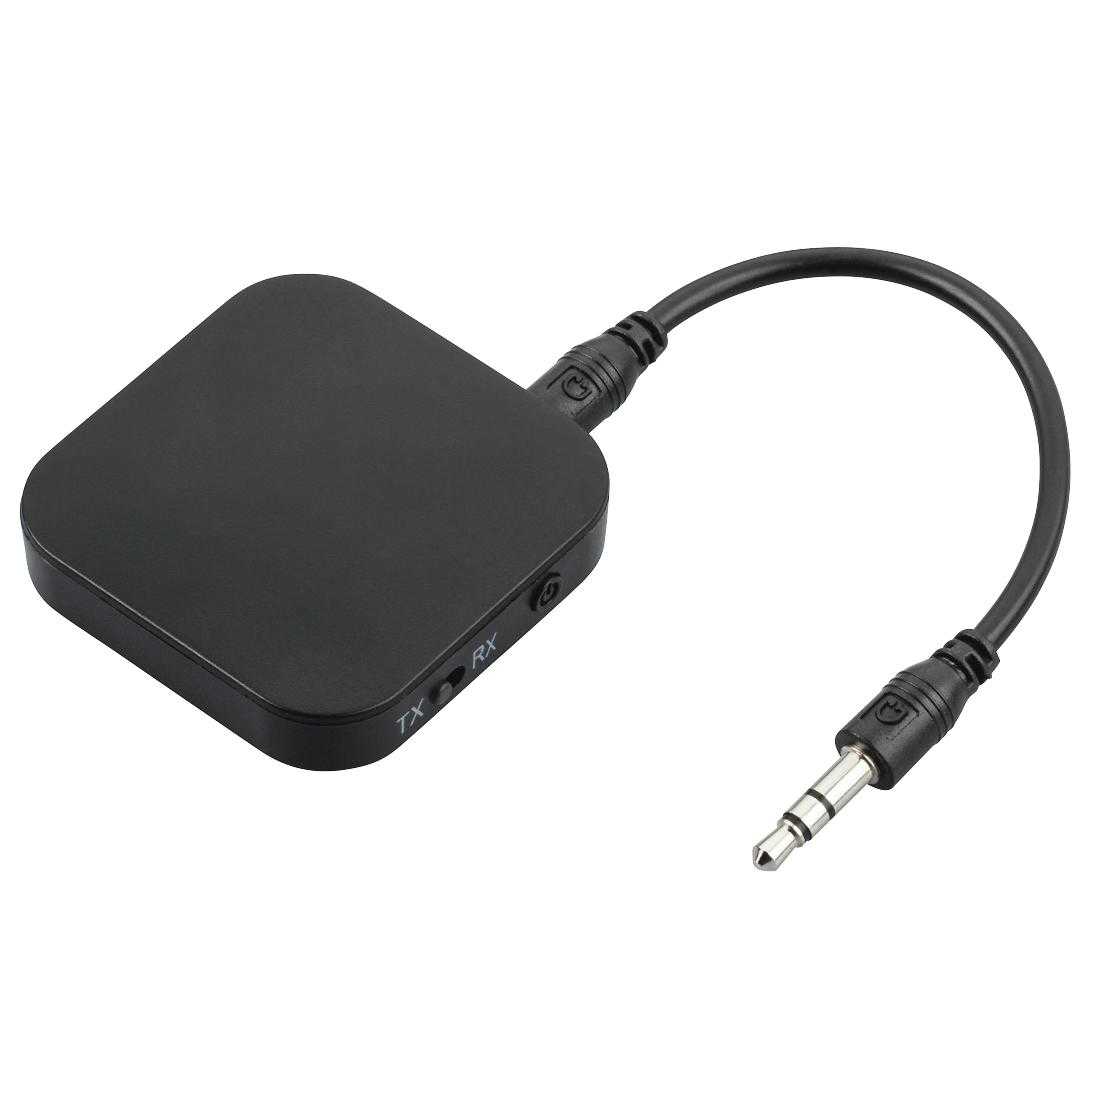 HAMA 184093 Bluetooth-Audio-Sender/Empfänger, 2in1-Adapter, Schwarz-02766128